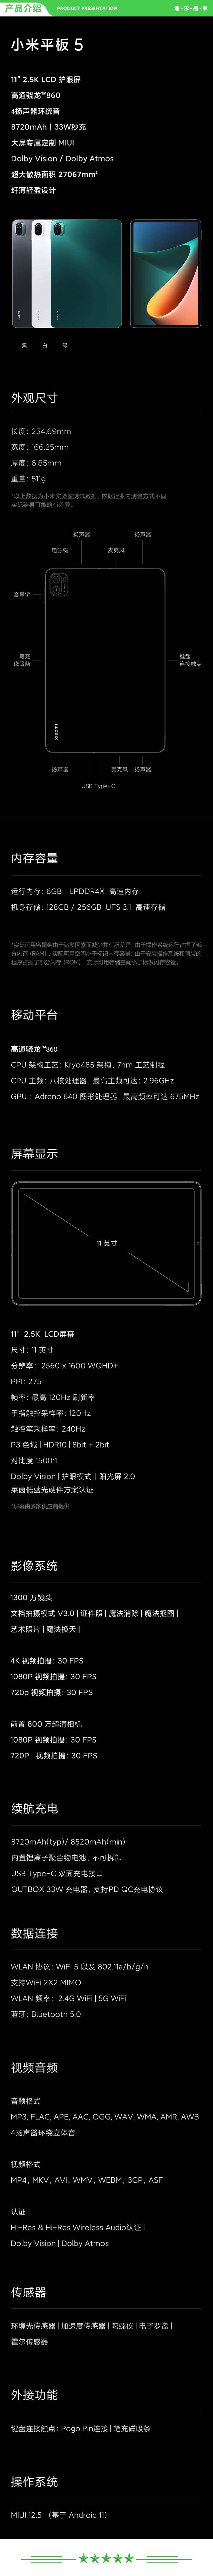 小米 xiaomi 平板5 平板电脑（11英寸2.5K高清 120Hz 骁龙860 6G+256GB 33W快充 杜比影音娱乐办公 黑色）.jpg